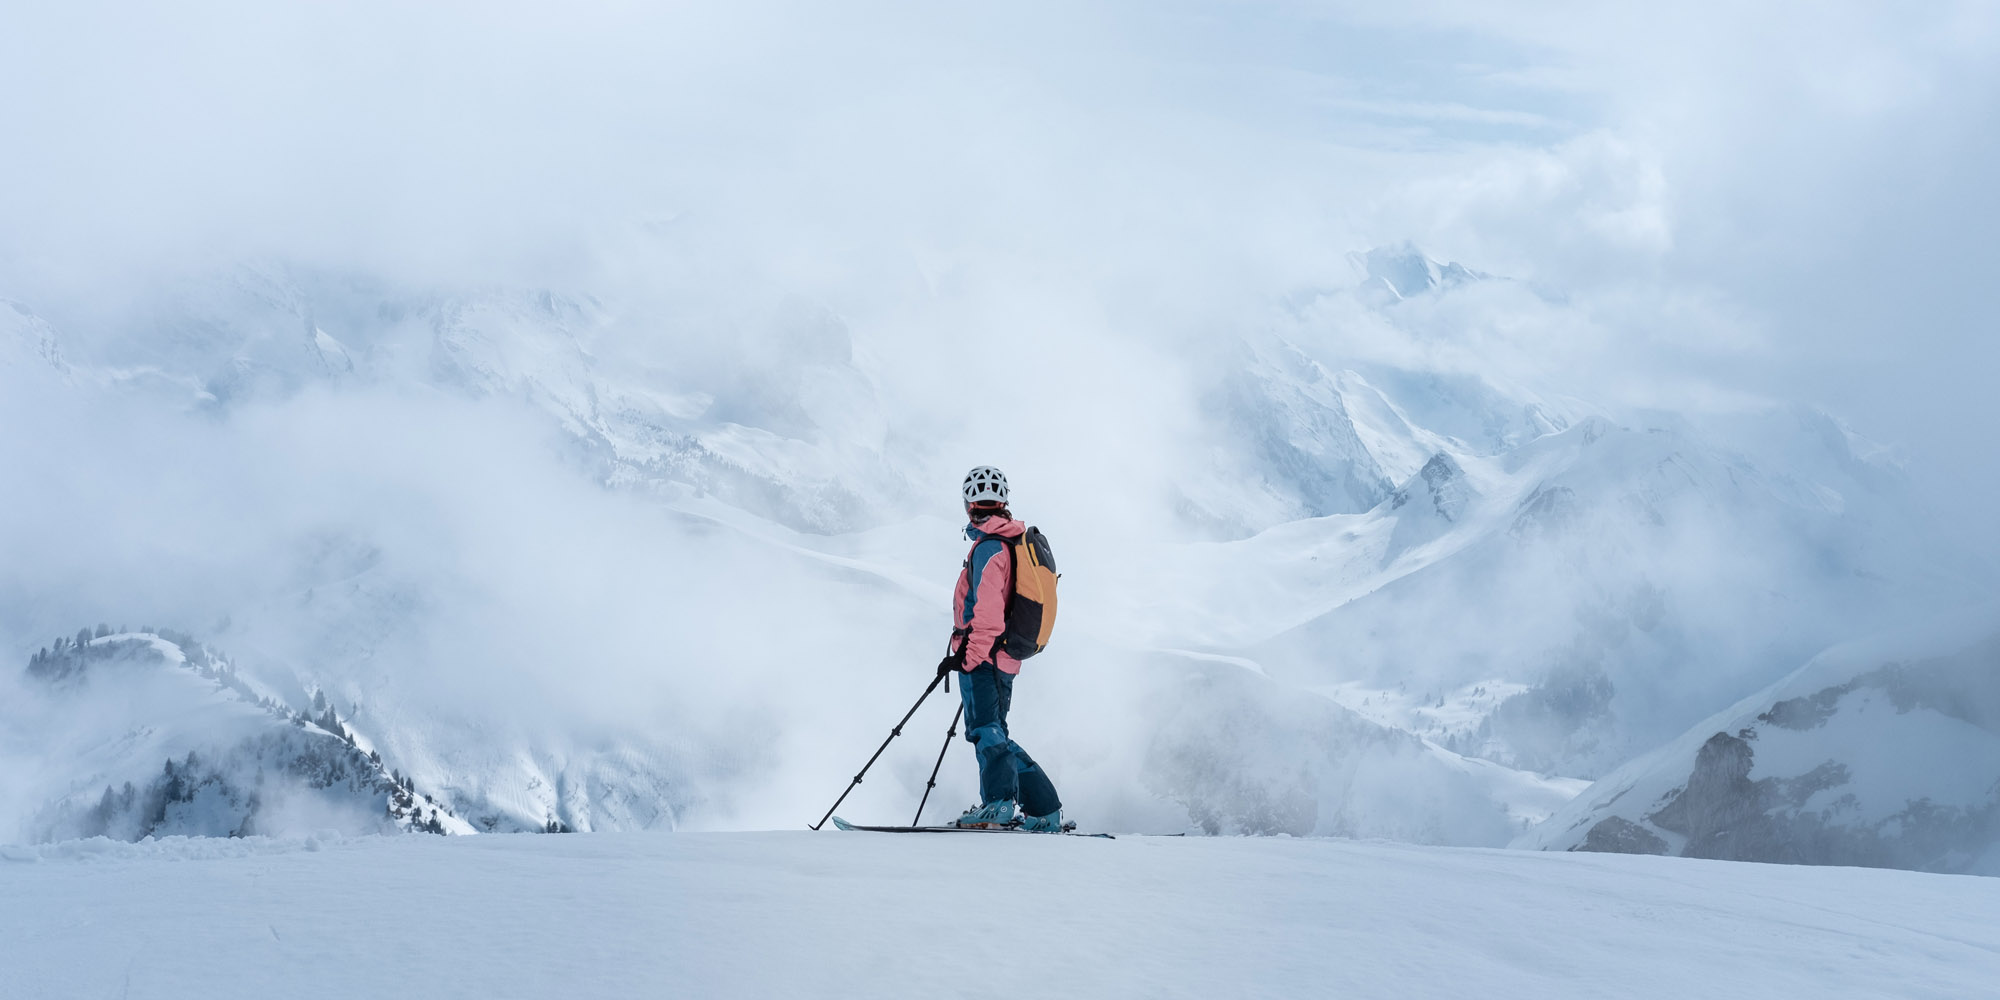 Лучшие фильмы про горные лыжи и сноуборд, после которых захочется покорять вершины